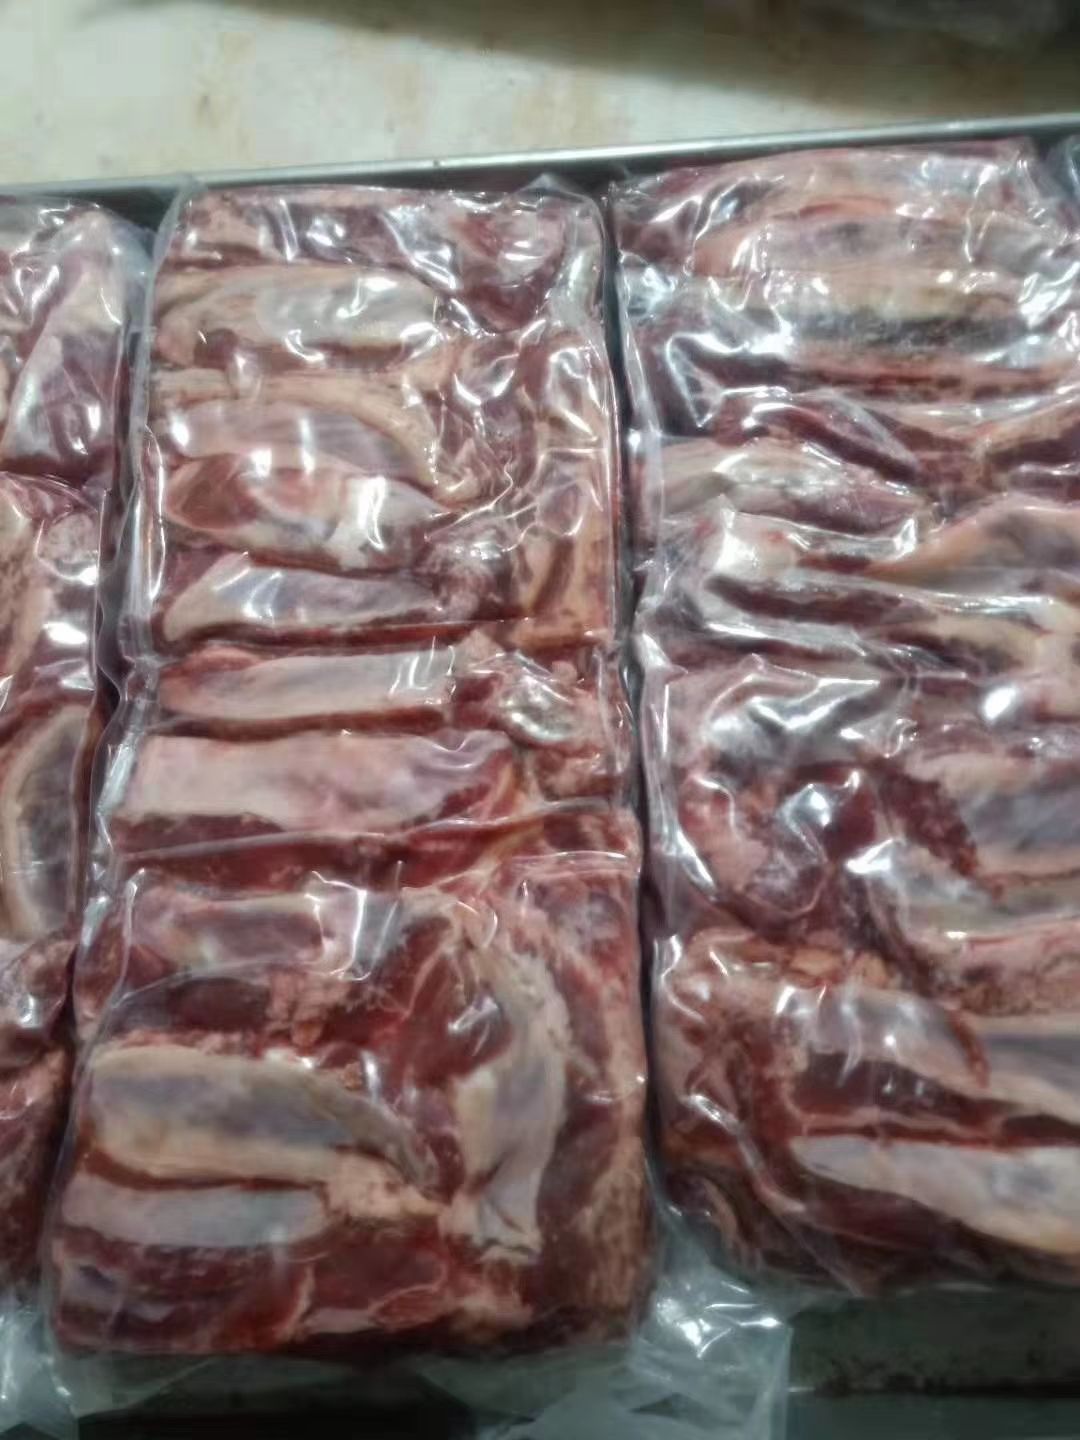 [牛肋排批发]牛腹肉条 肋条肉 腹肉条价格24元/斤 惠农网